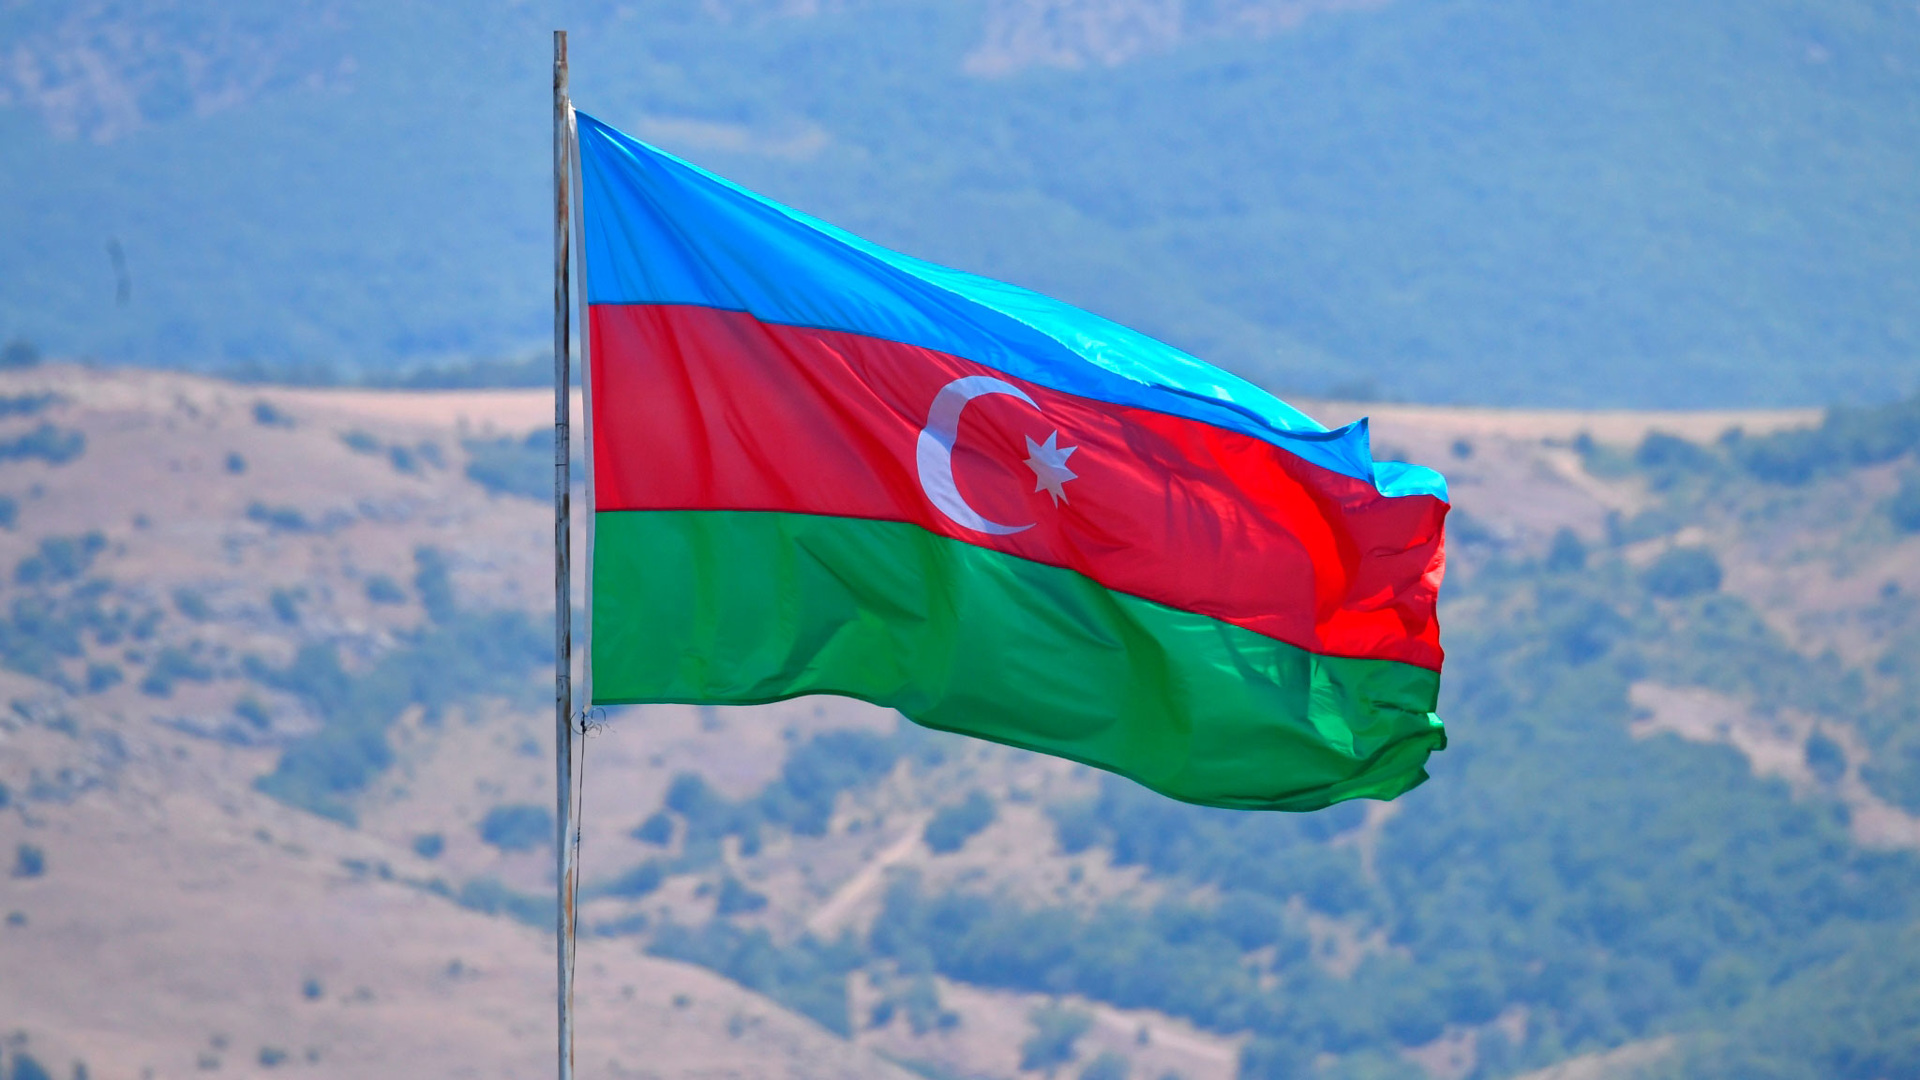 государственный флаг азербайджана